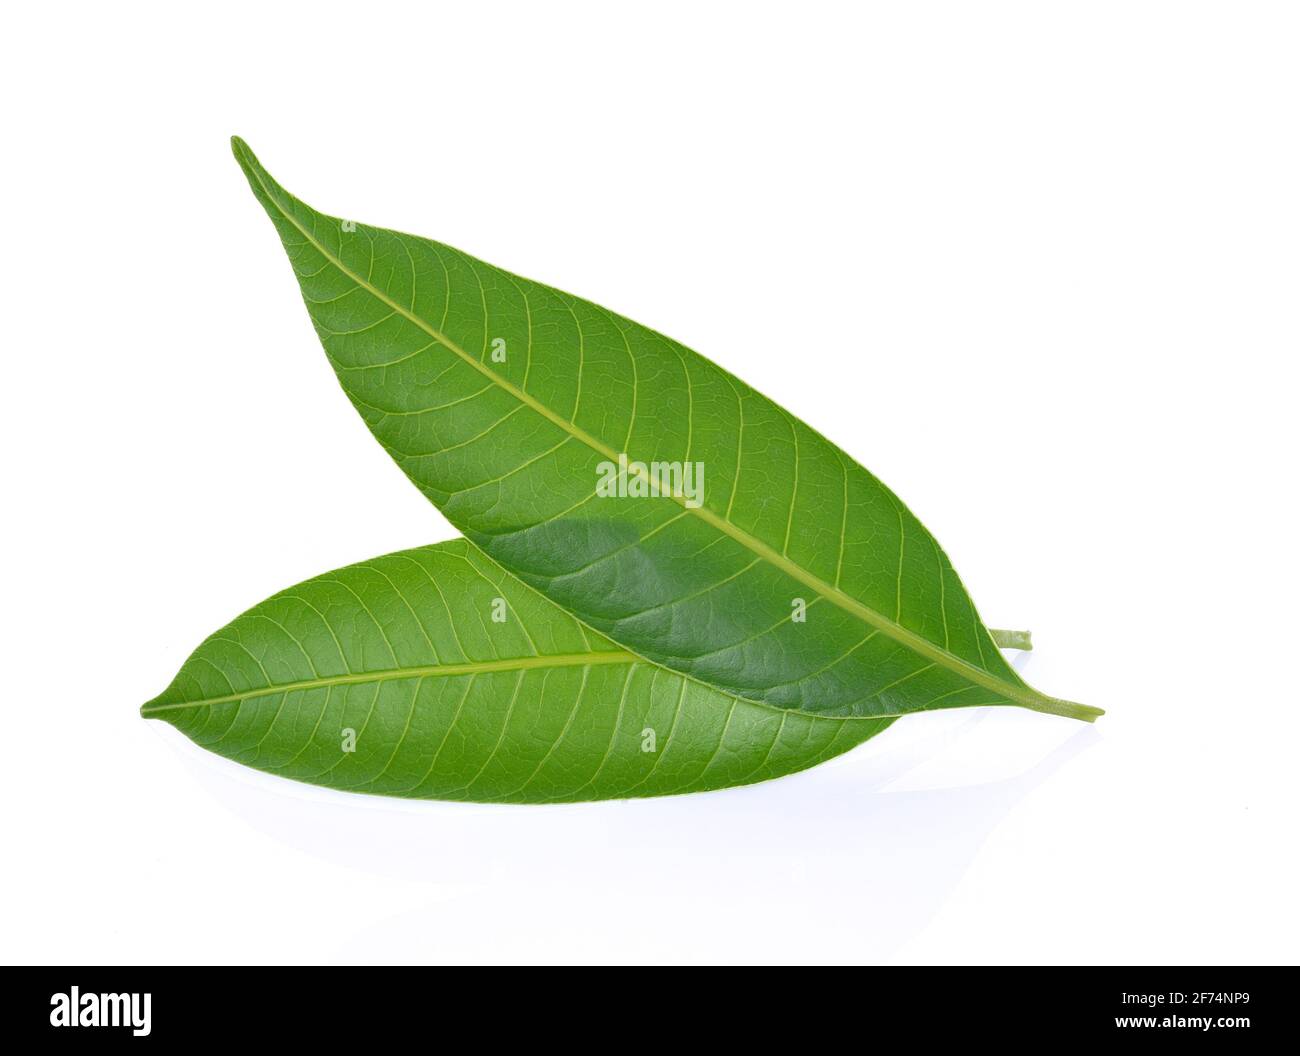 Mango leaf on a white background Stock Photo